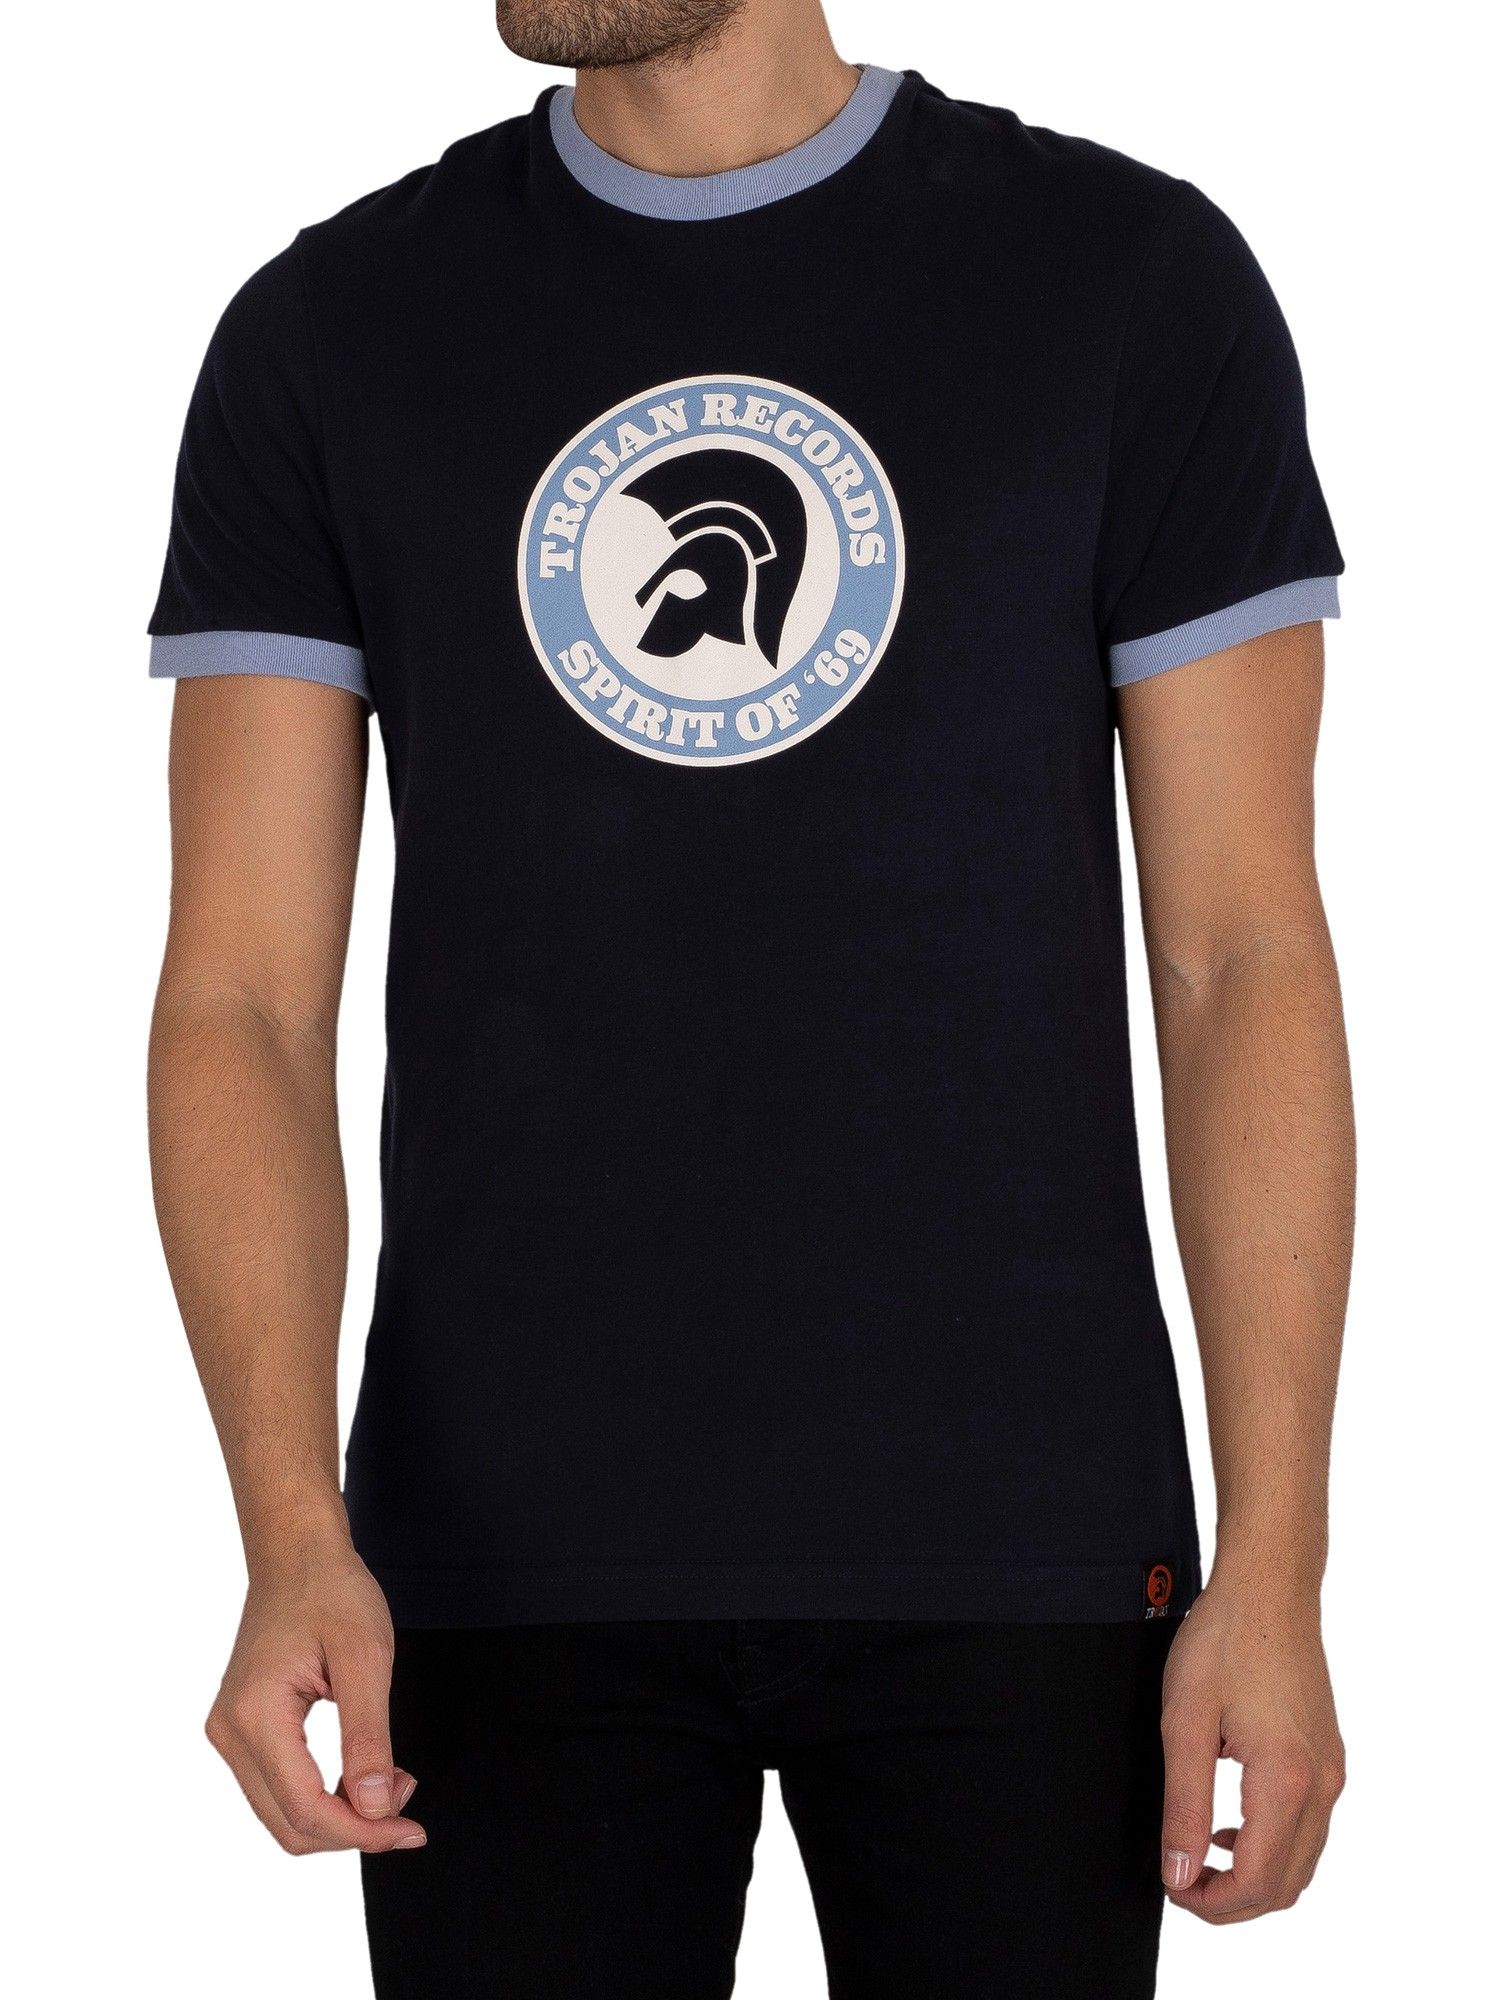 Trojan Trojan Pour des hommes T-shirt Esprit de 69 Bleu 